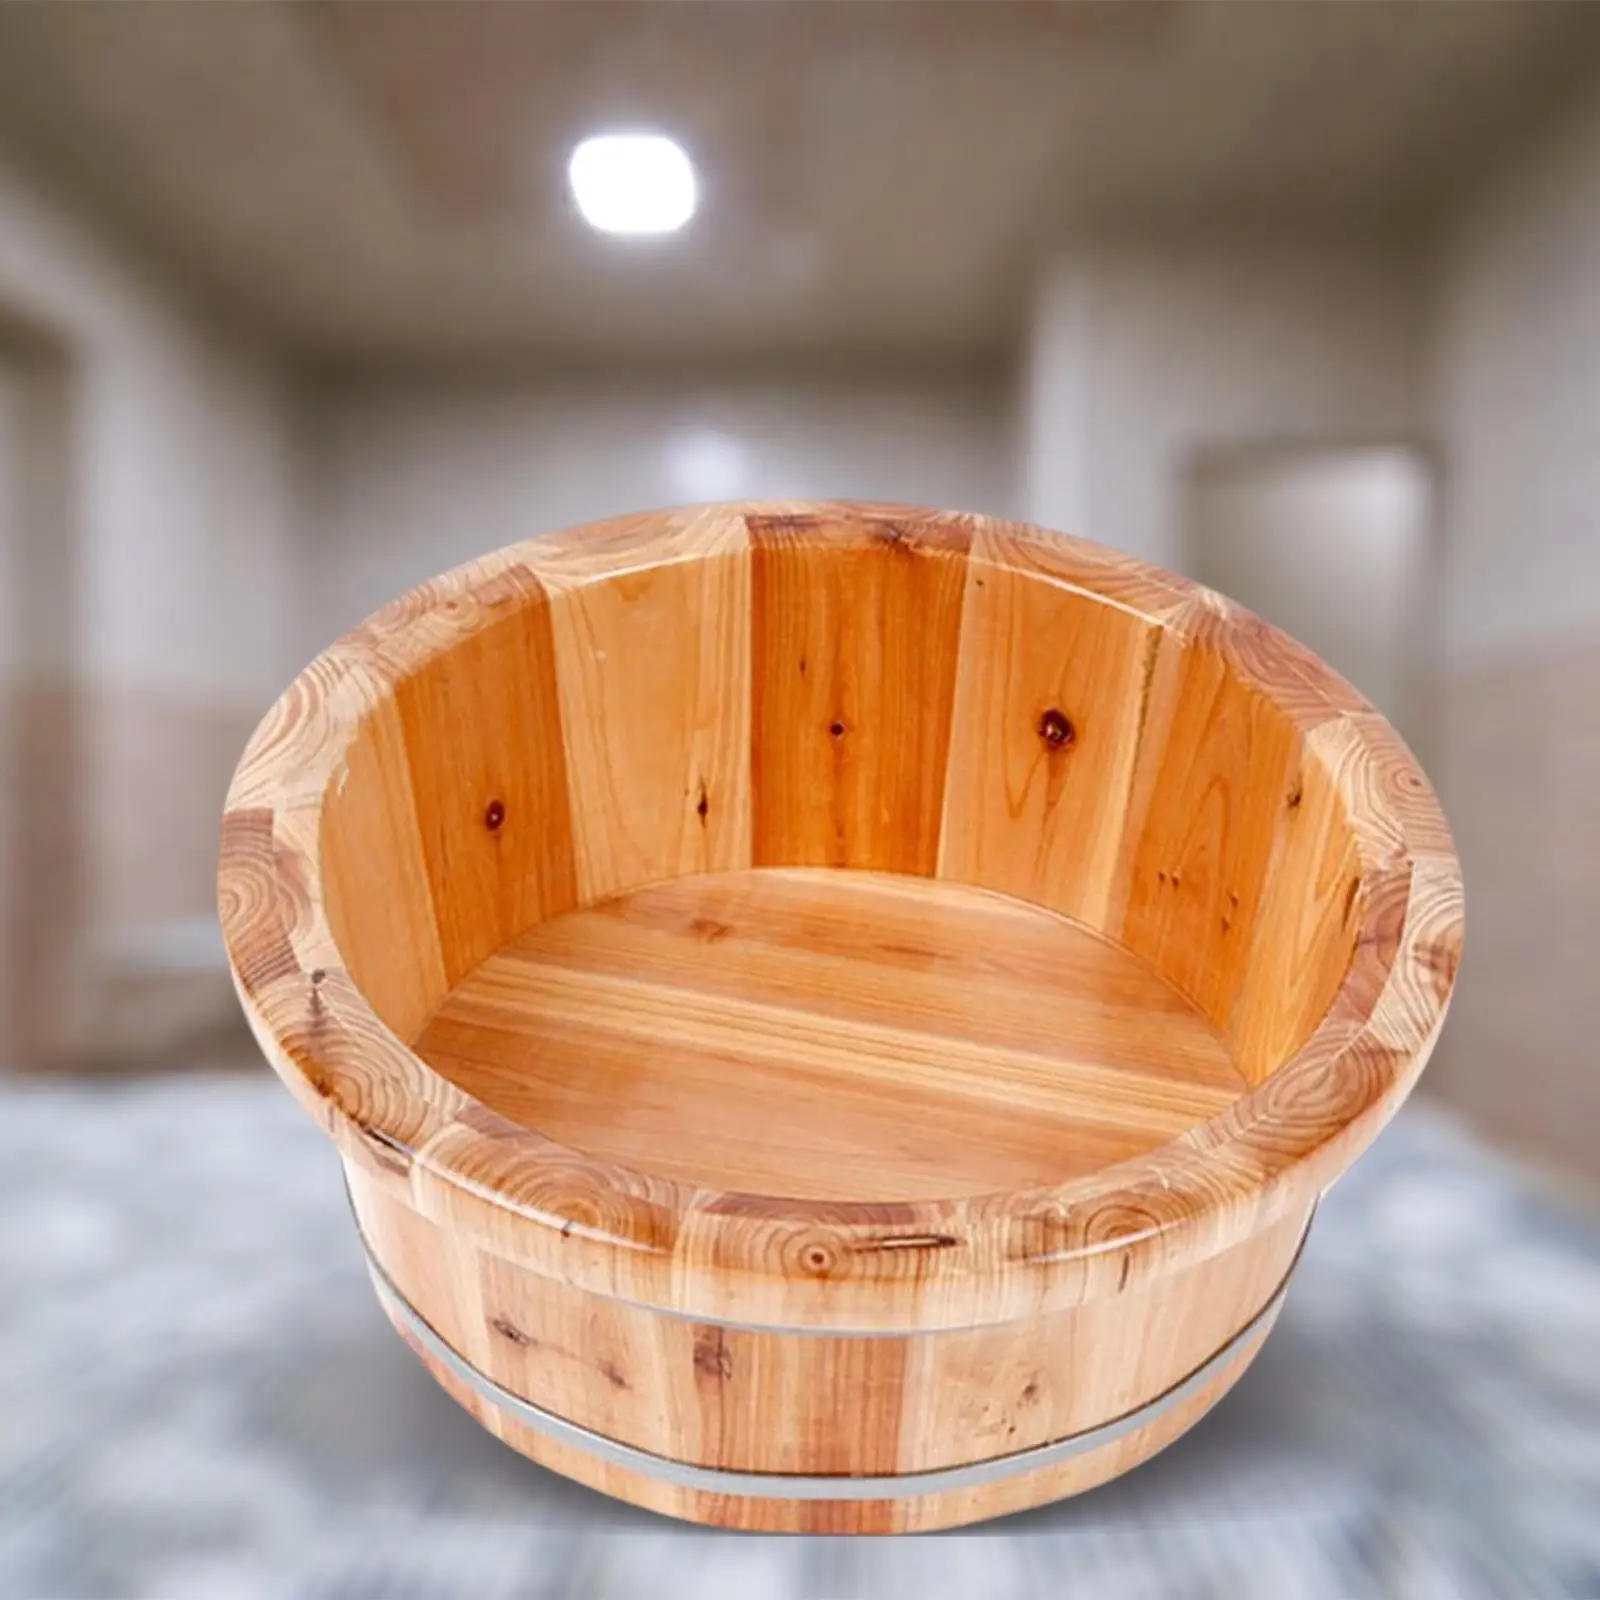 Cedar Wood Feet Barrel Bath Tub Deep Pedicure Foot Basin Beauty Sauna Shower Bucket Bathroom